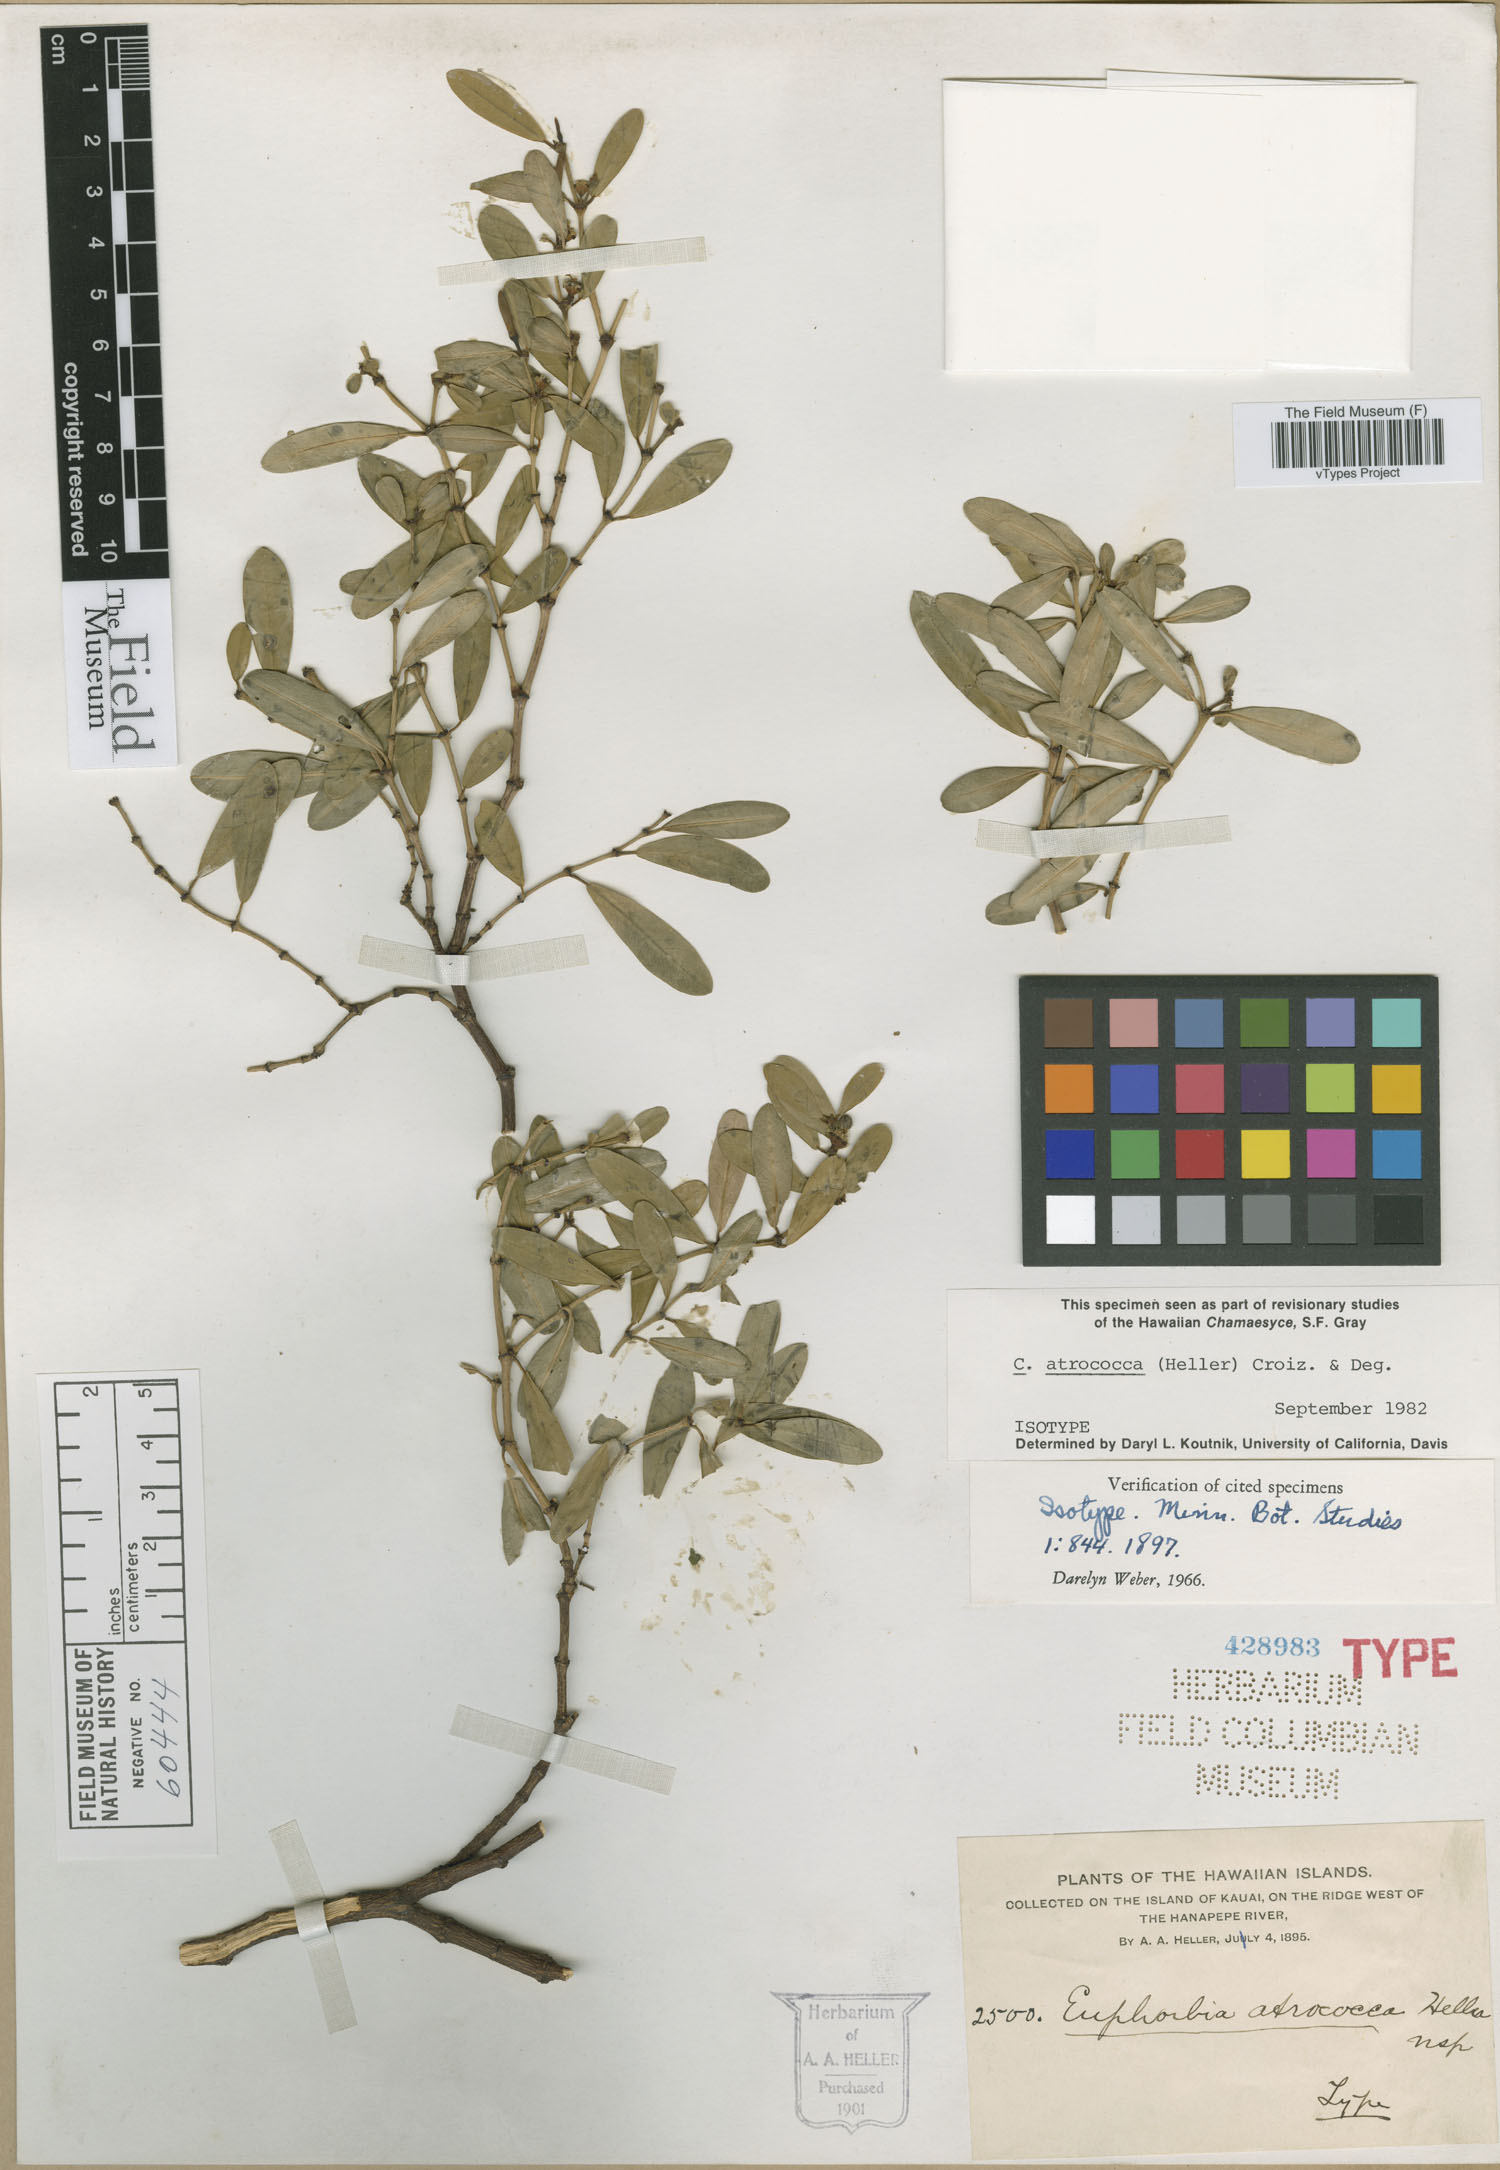 Euphorbia atrococca image